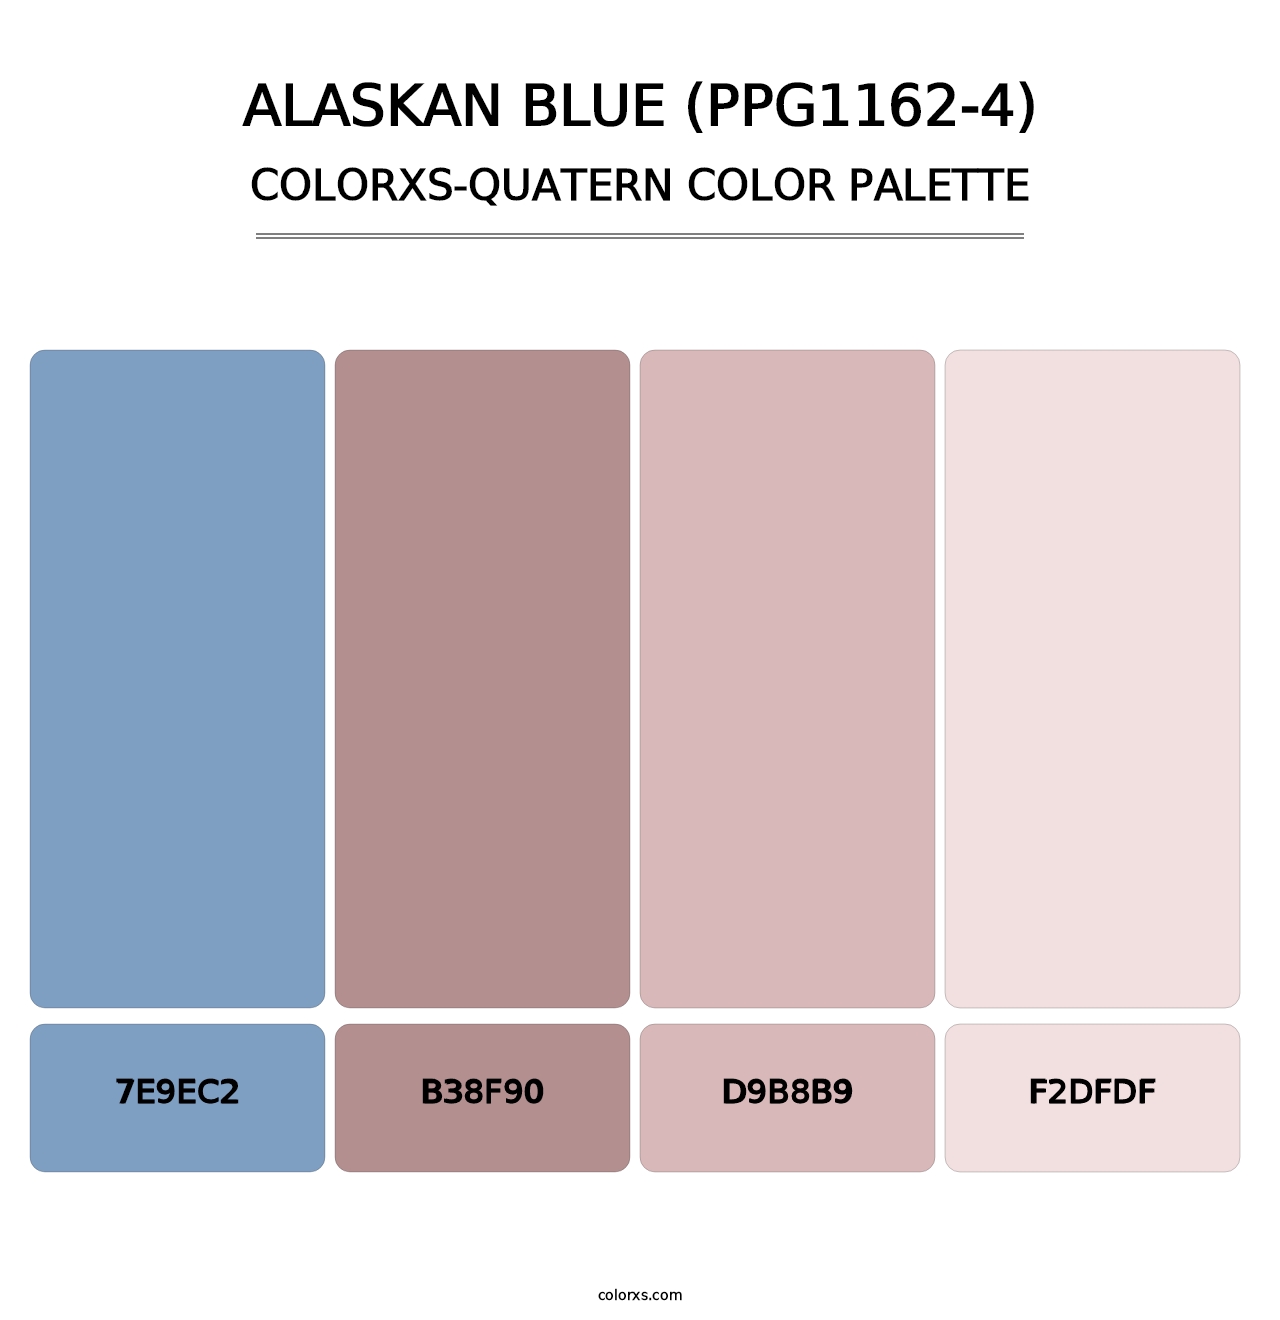 Alaskan Blue (PPG1162-4) - Colorxs Quatern Palette